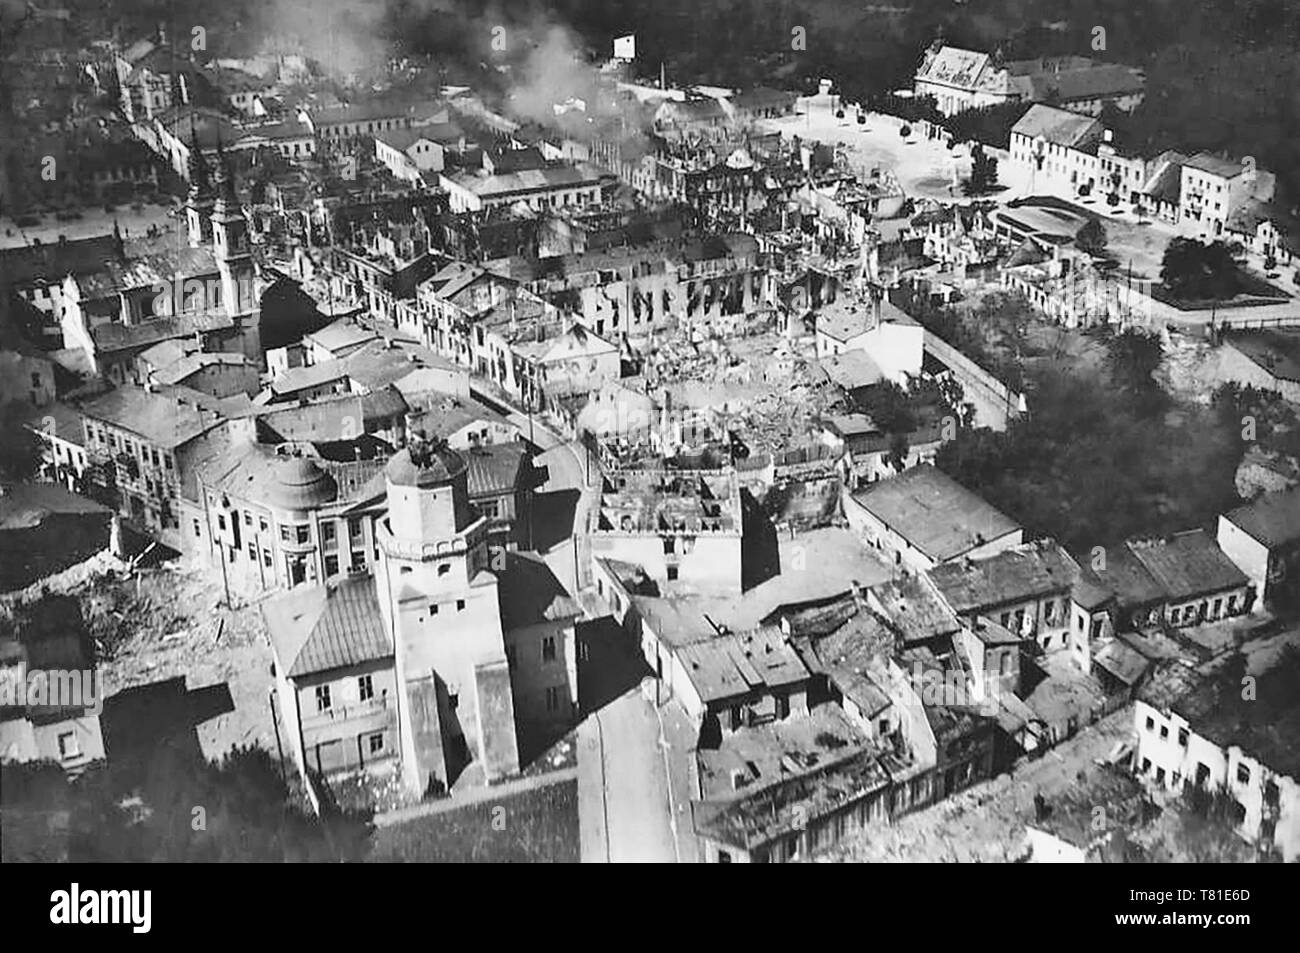 Wielun, appena dopo la Luftwaffe tedesca bombardamento del 1 settembre 1939 (il primo giorno di WW II) foto fatte dal campanile di una chiesa in Wielun Foto Stock